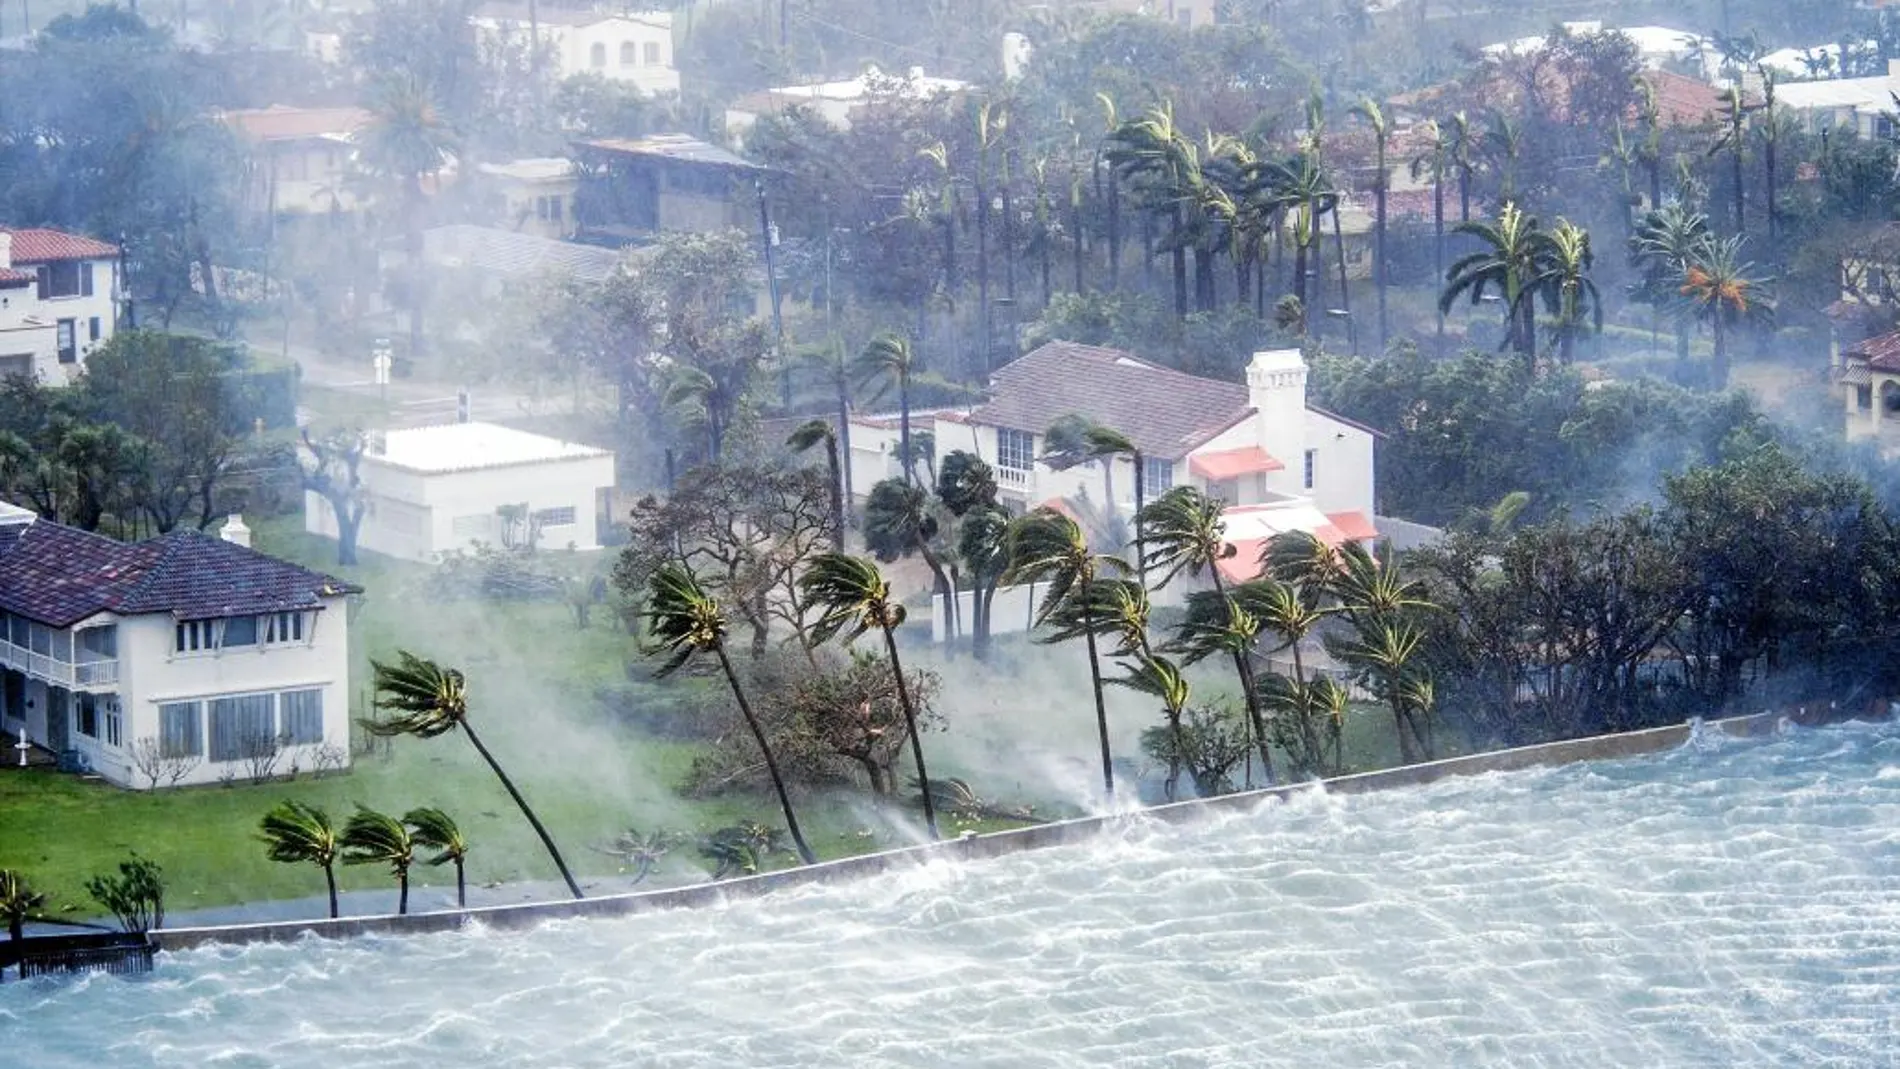 La huella del huracán. Imagen de Irma a su paso por Miami Beach, en Florida, donde provocó grandes inundaciones en el interior